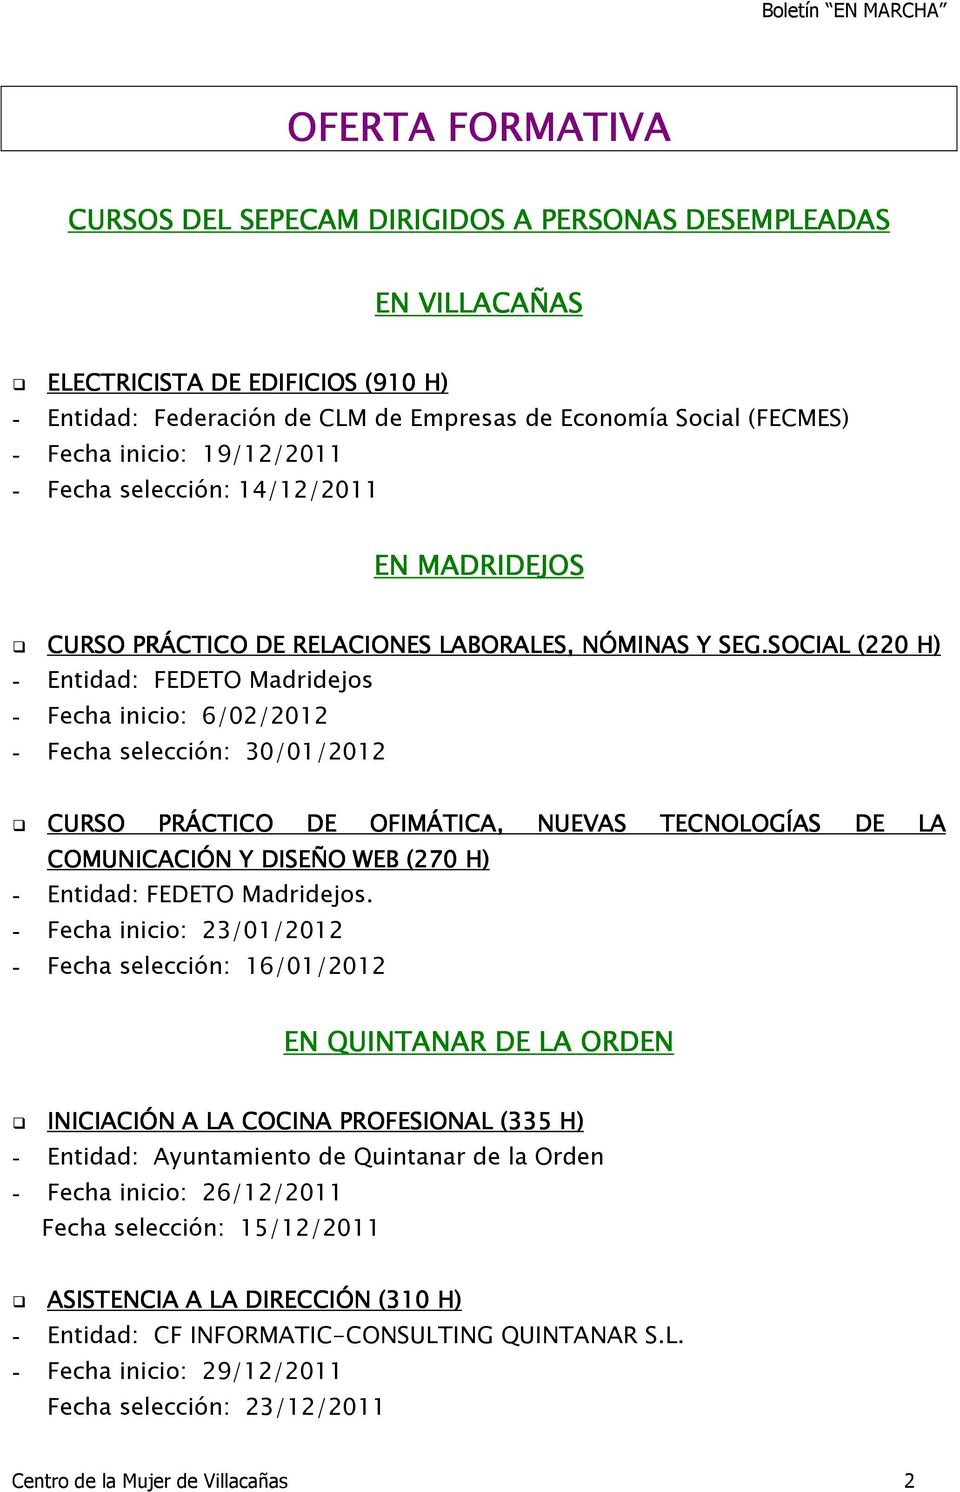 SOCIAL (220 H) - Entidad: FEDETO Madridejos - Fecha inicio: 6/02/2012 - Fecha selección: 30/01/2012 CURSO PRÁCTICO DE OFIMÁTICA, NUEVAS TECNOLOGÍAS DE LA COMUNICACIÓN Y DISEÑO WEB (270 H) - Entidad: